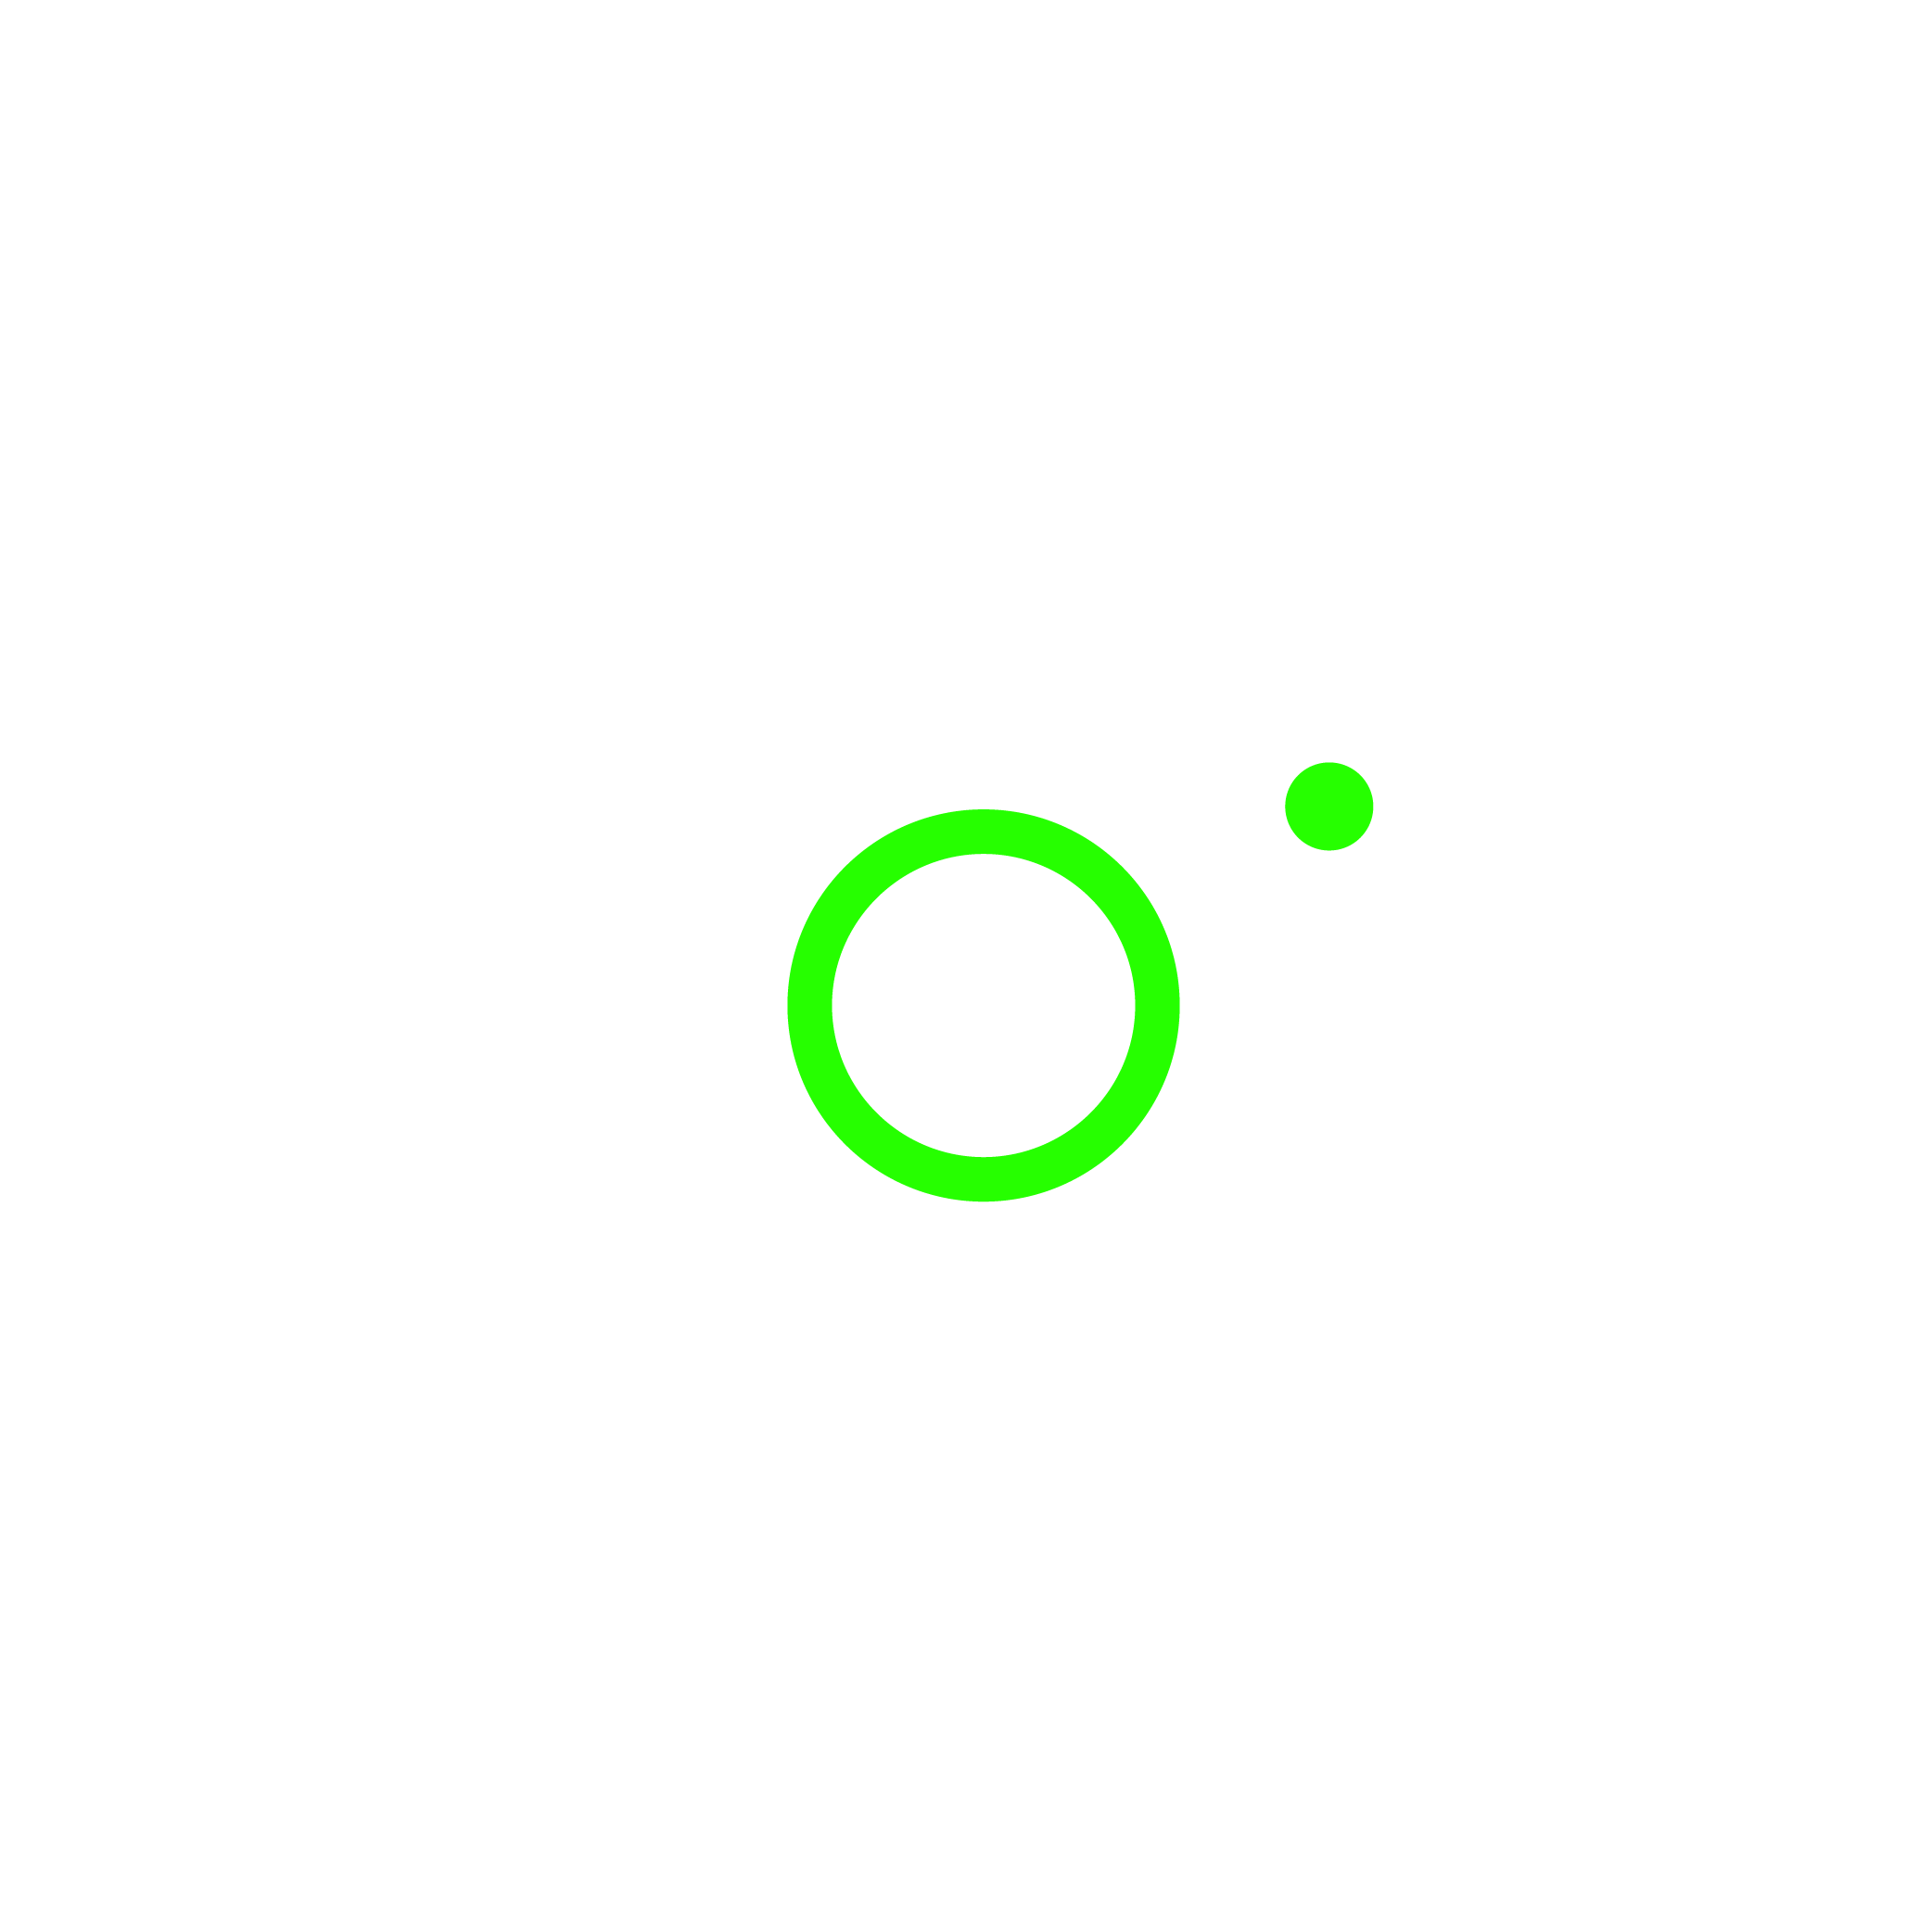 camera vector icon